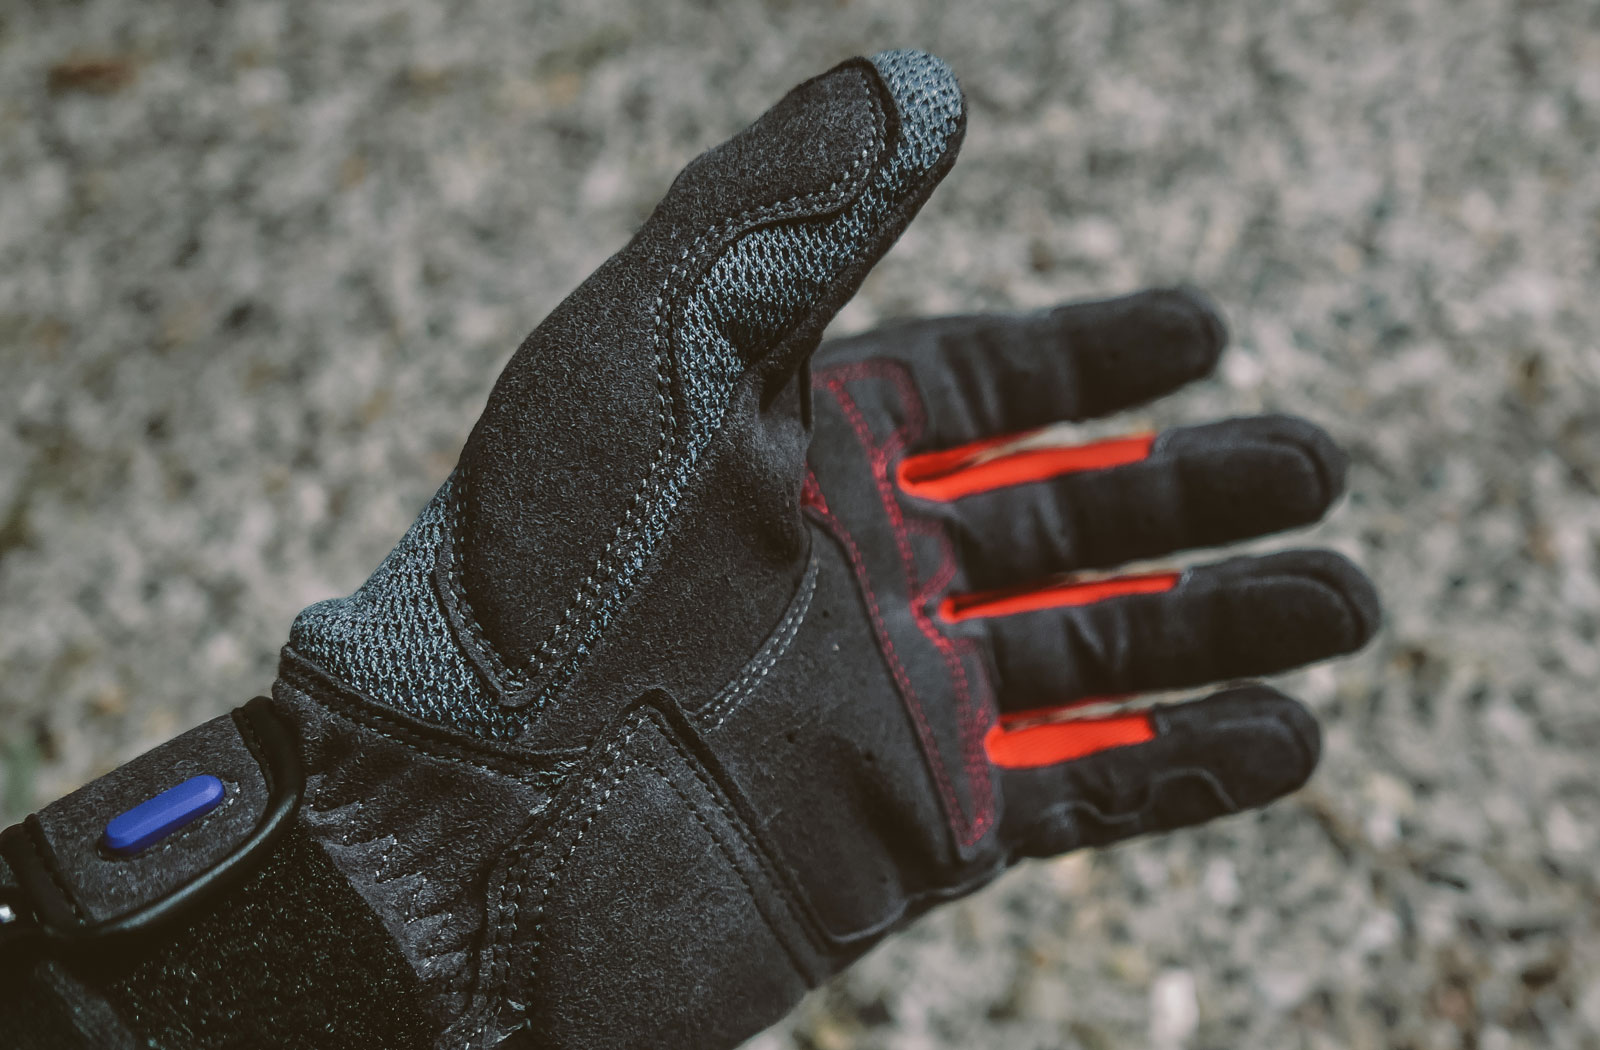 Rev'it! Volcano gloves review